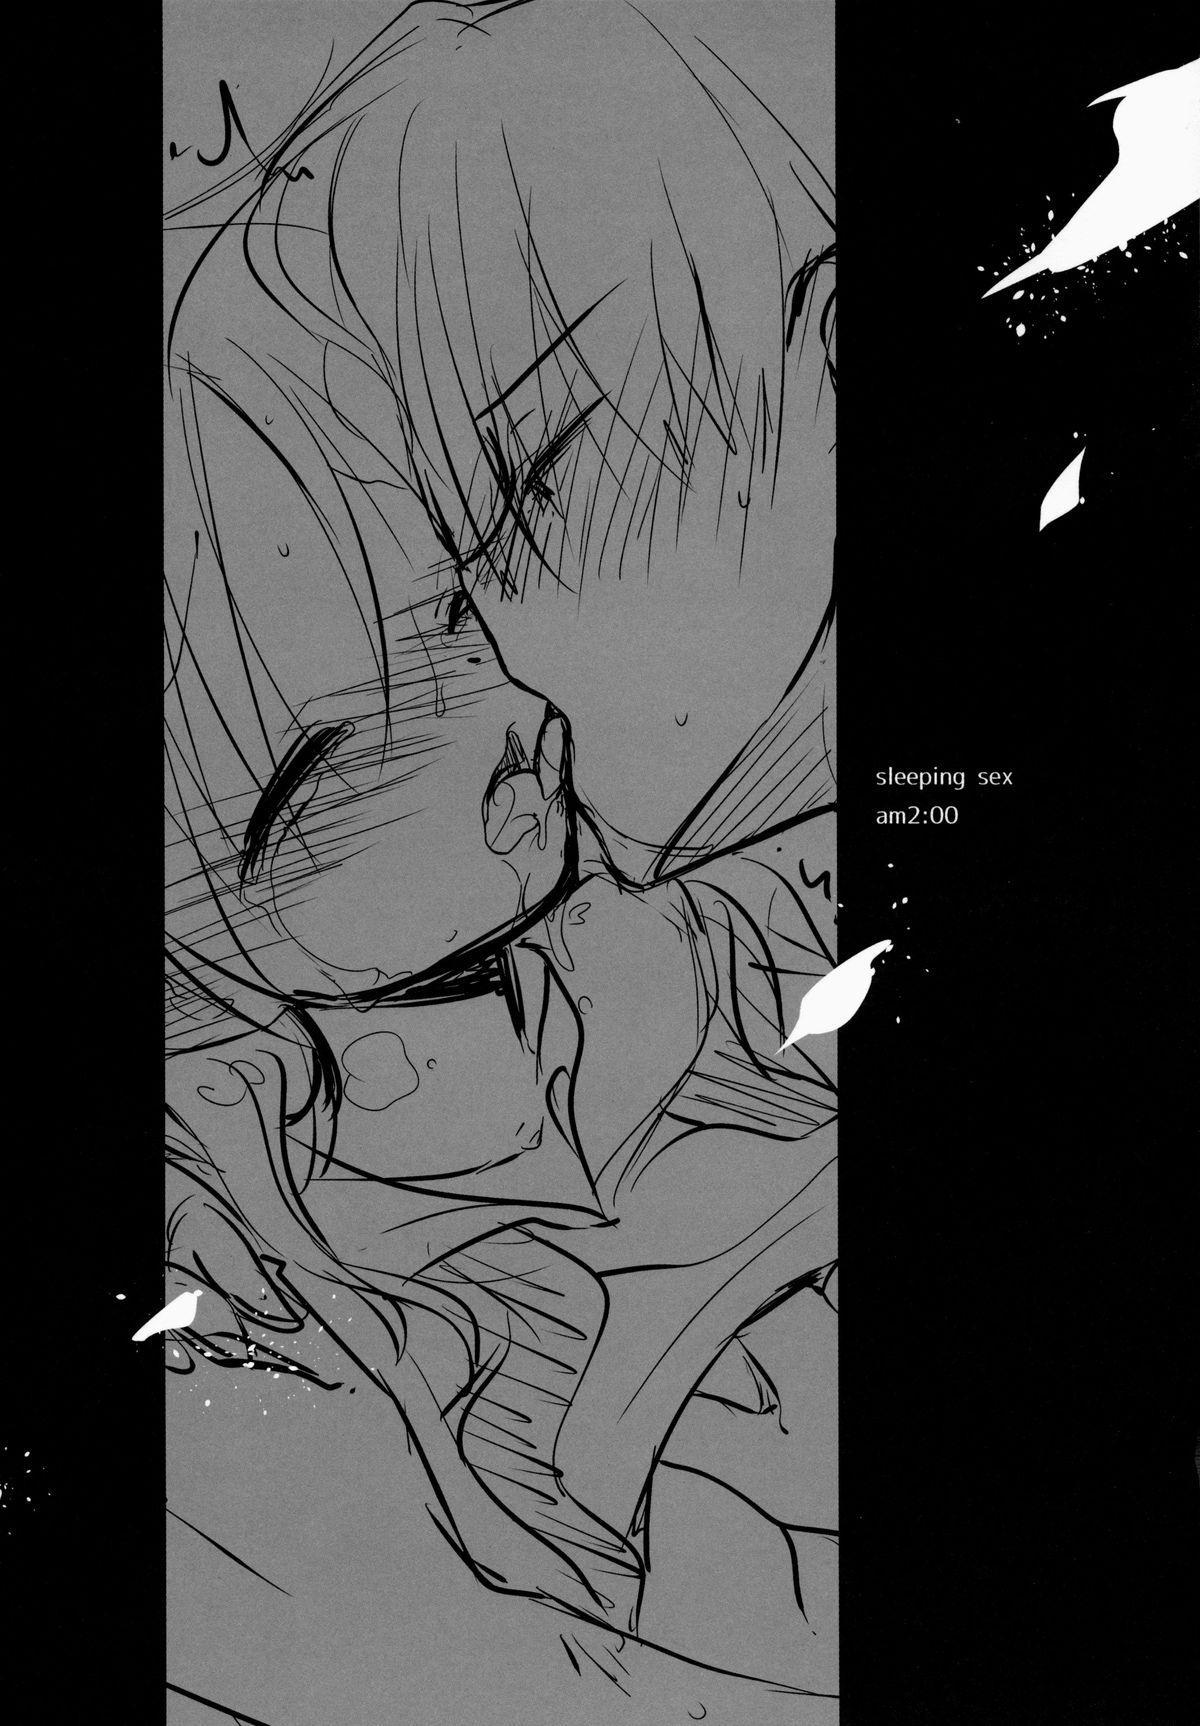 Club Oyasumi Sex am2:00 Milf Sex - Page 3